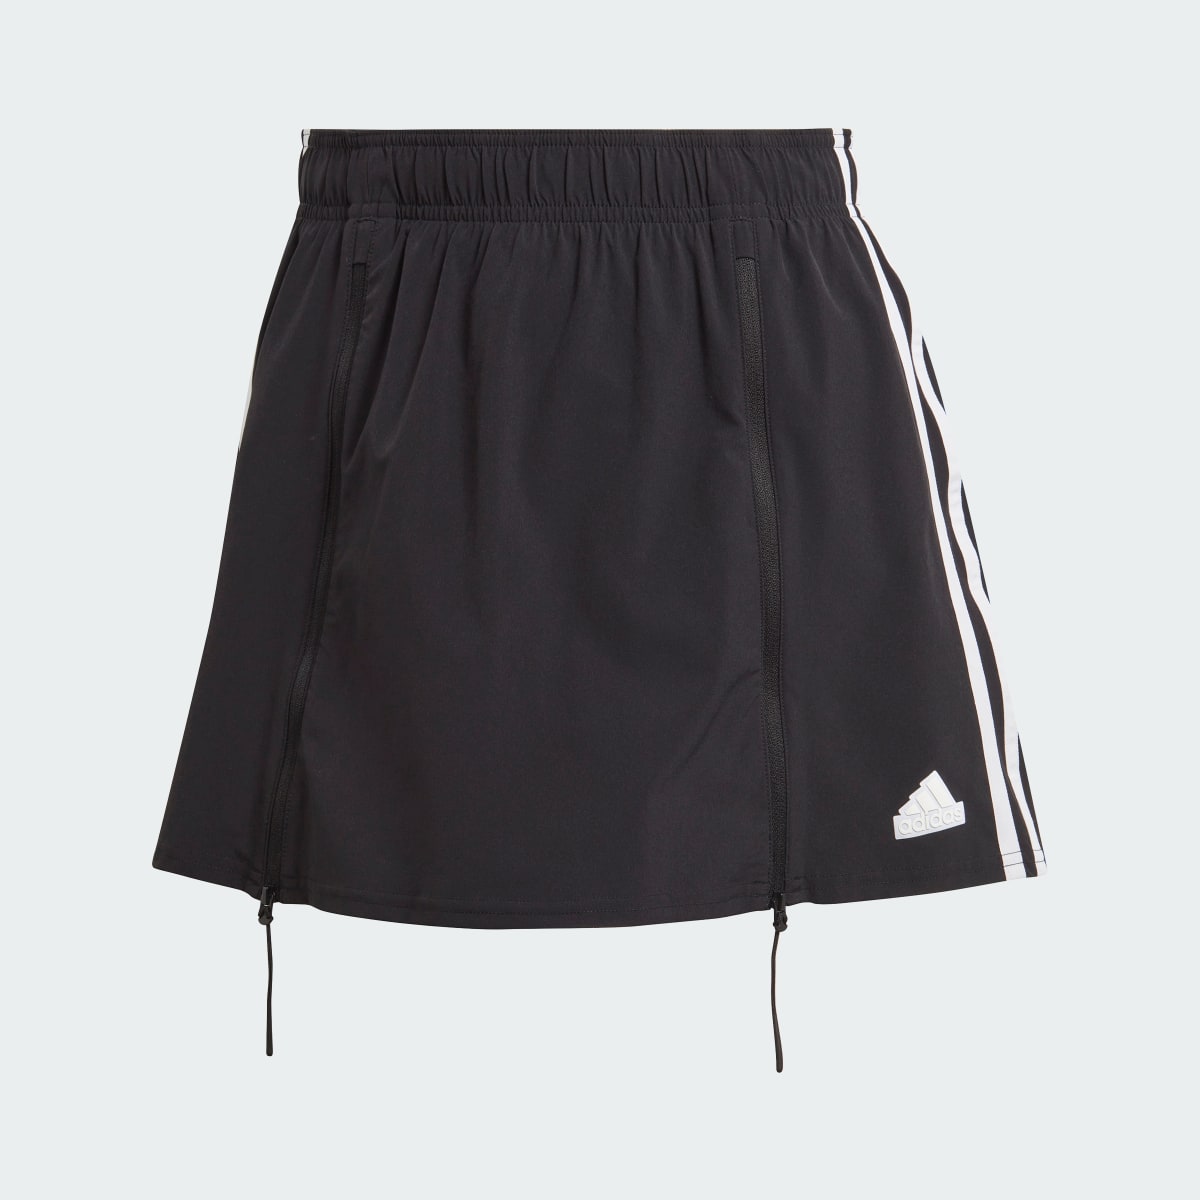 Adidas Express All-Gender Skirt. 4